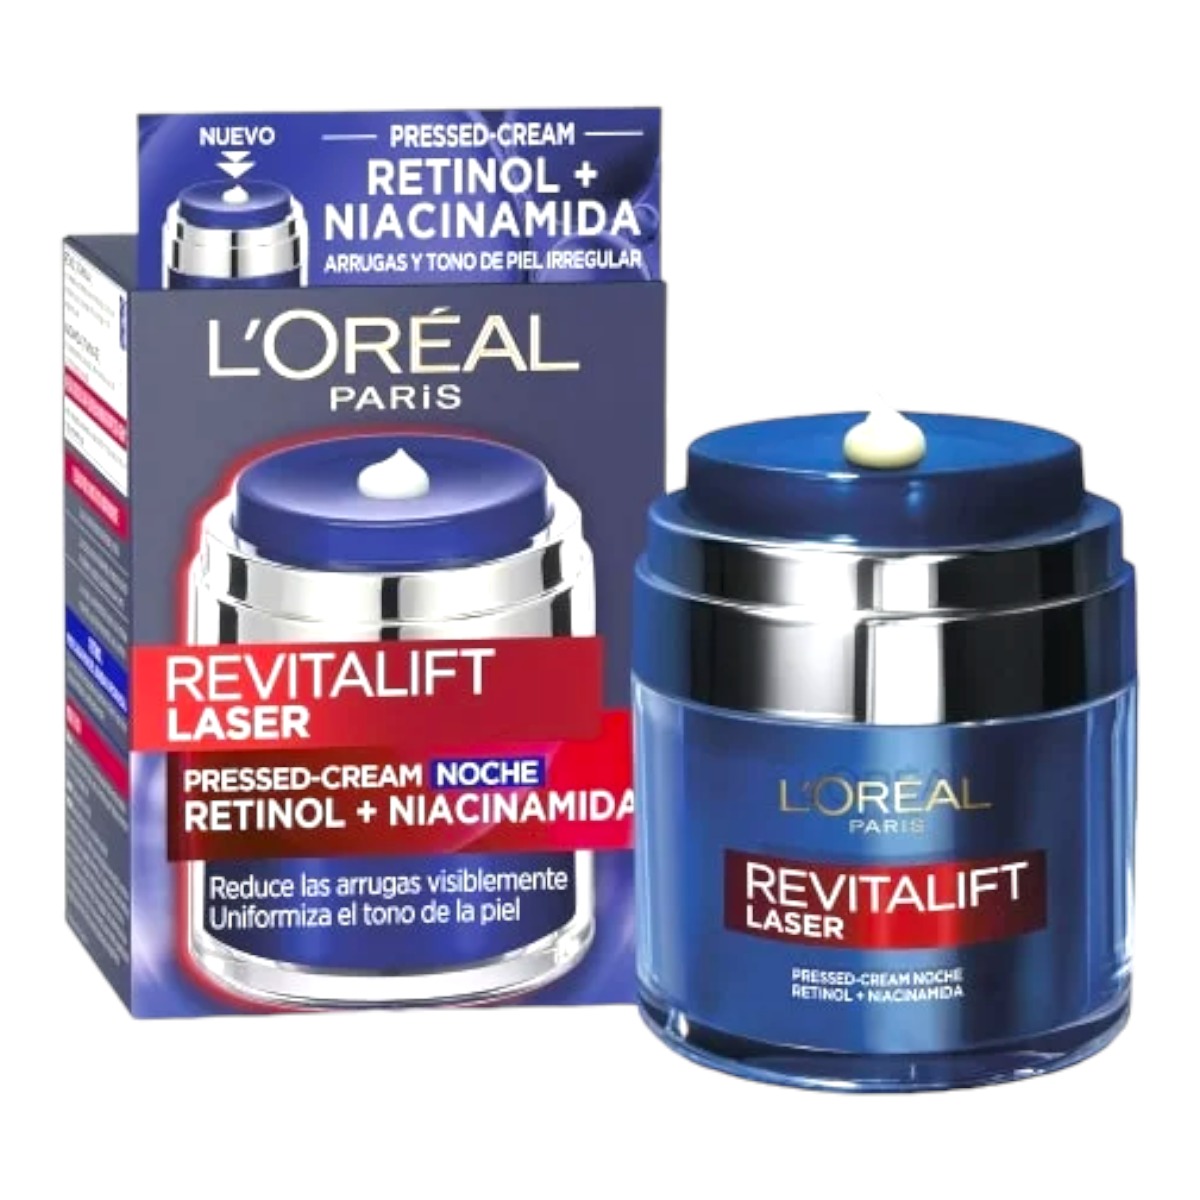 L'Oreal París Maquillaje - L'ORÉAL PARIS Revitalift Laser  Crema facial antiarrugas con Retinol + Niacidamida Noche 50 ml